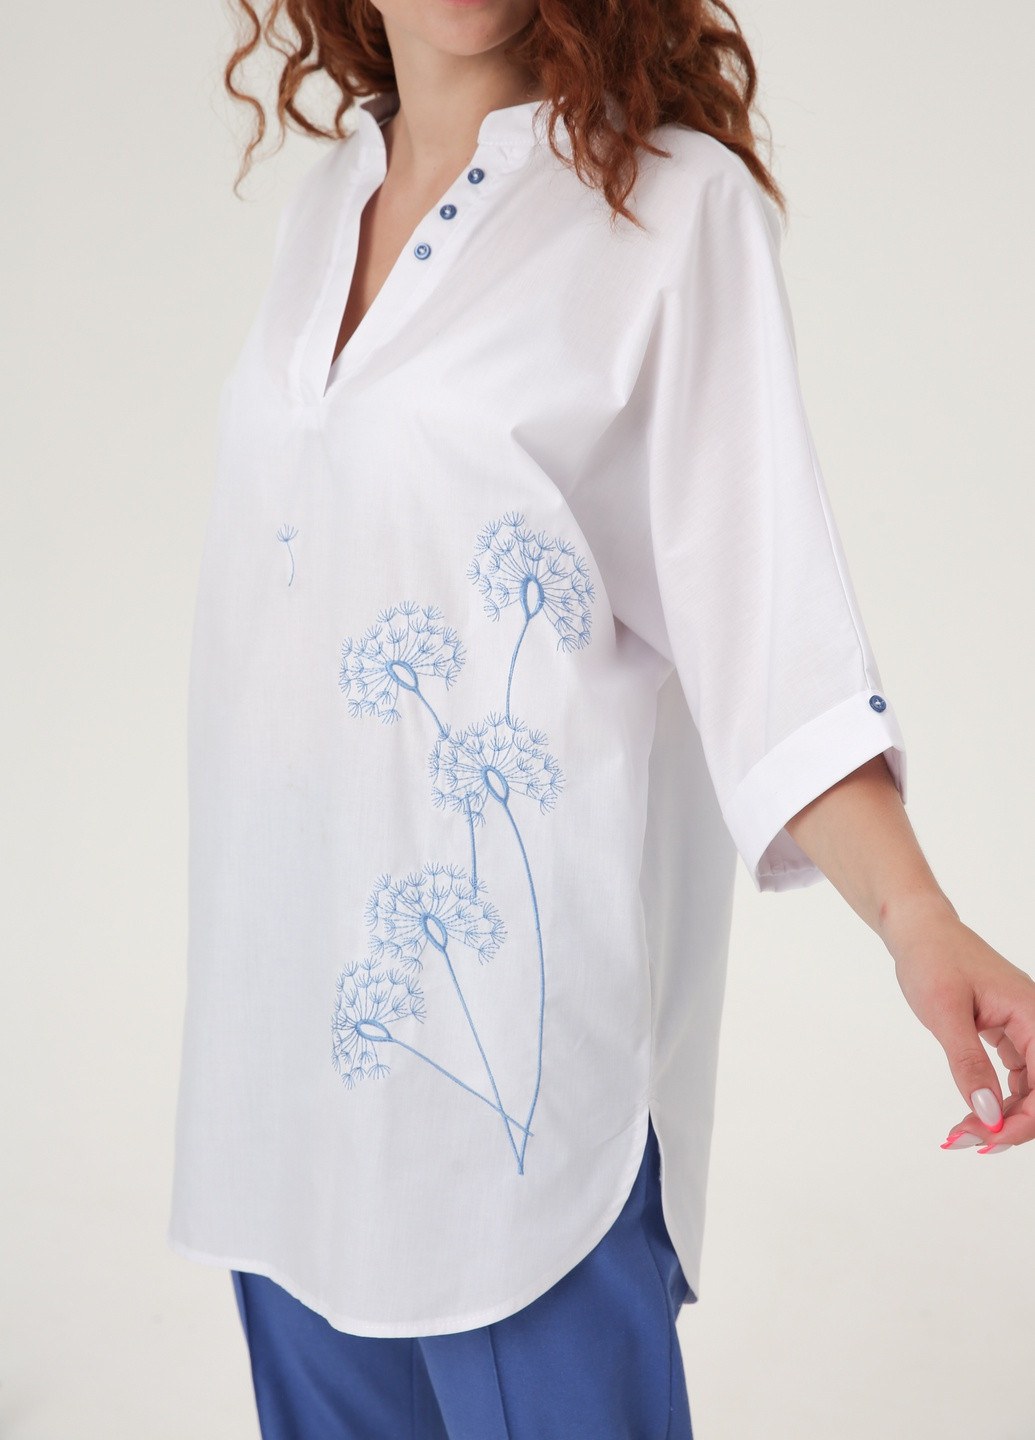 Белая демисезонная блузка - туника с удлиненной спинкой и вышивкой по груди. INNOE Блуза с вышивкой